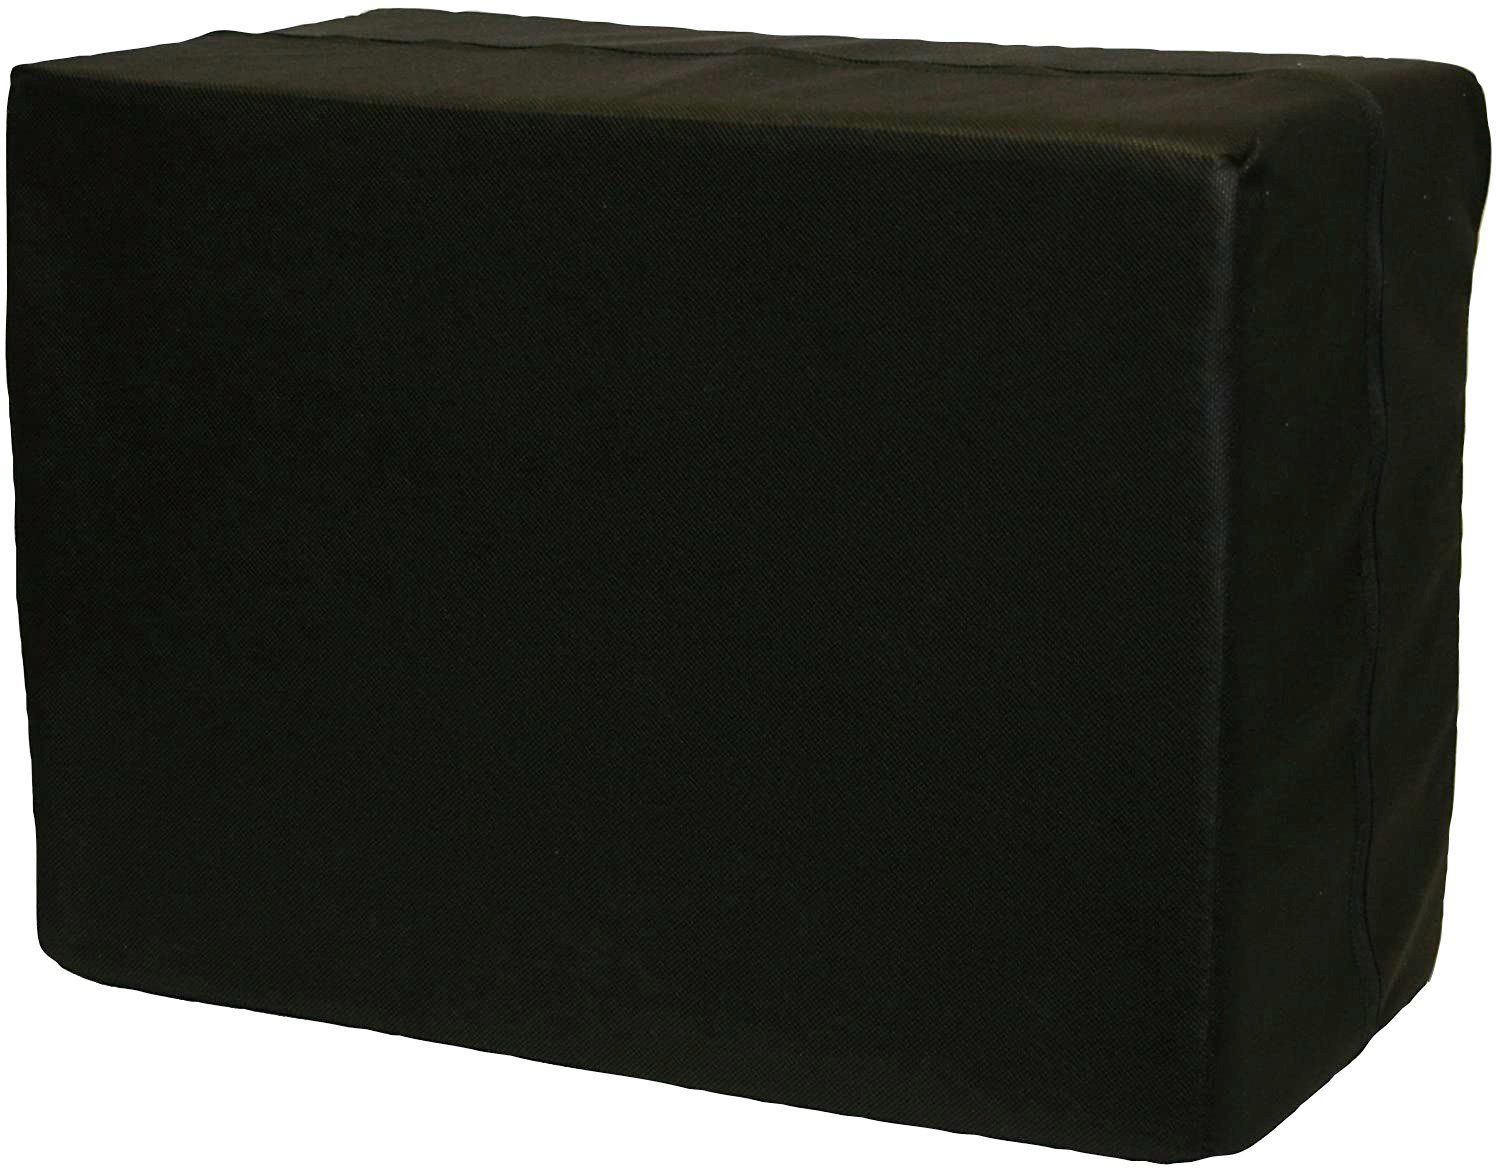 IWH Sitzhocker Bandscheibenwürfel, schwarz, Maße: ca. 30 x 40 x 55 cm, zur Entlastung Ihrer Wirbelsäule